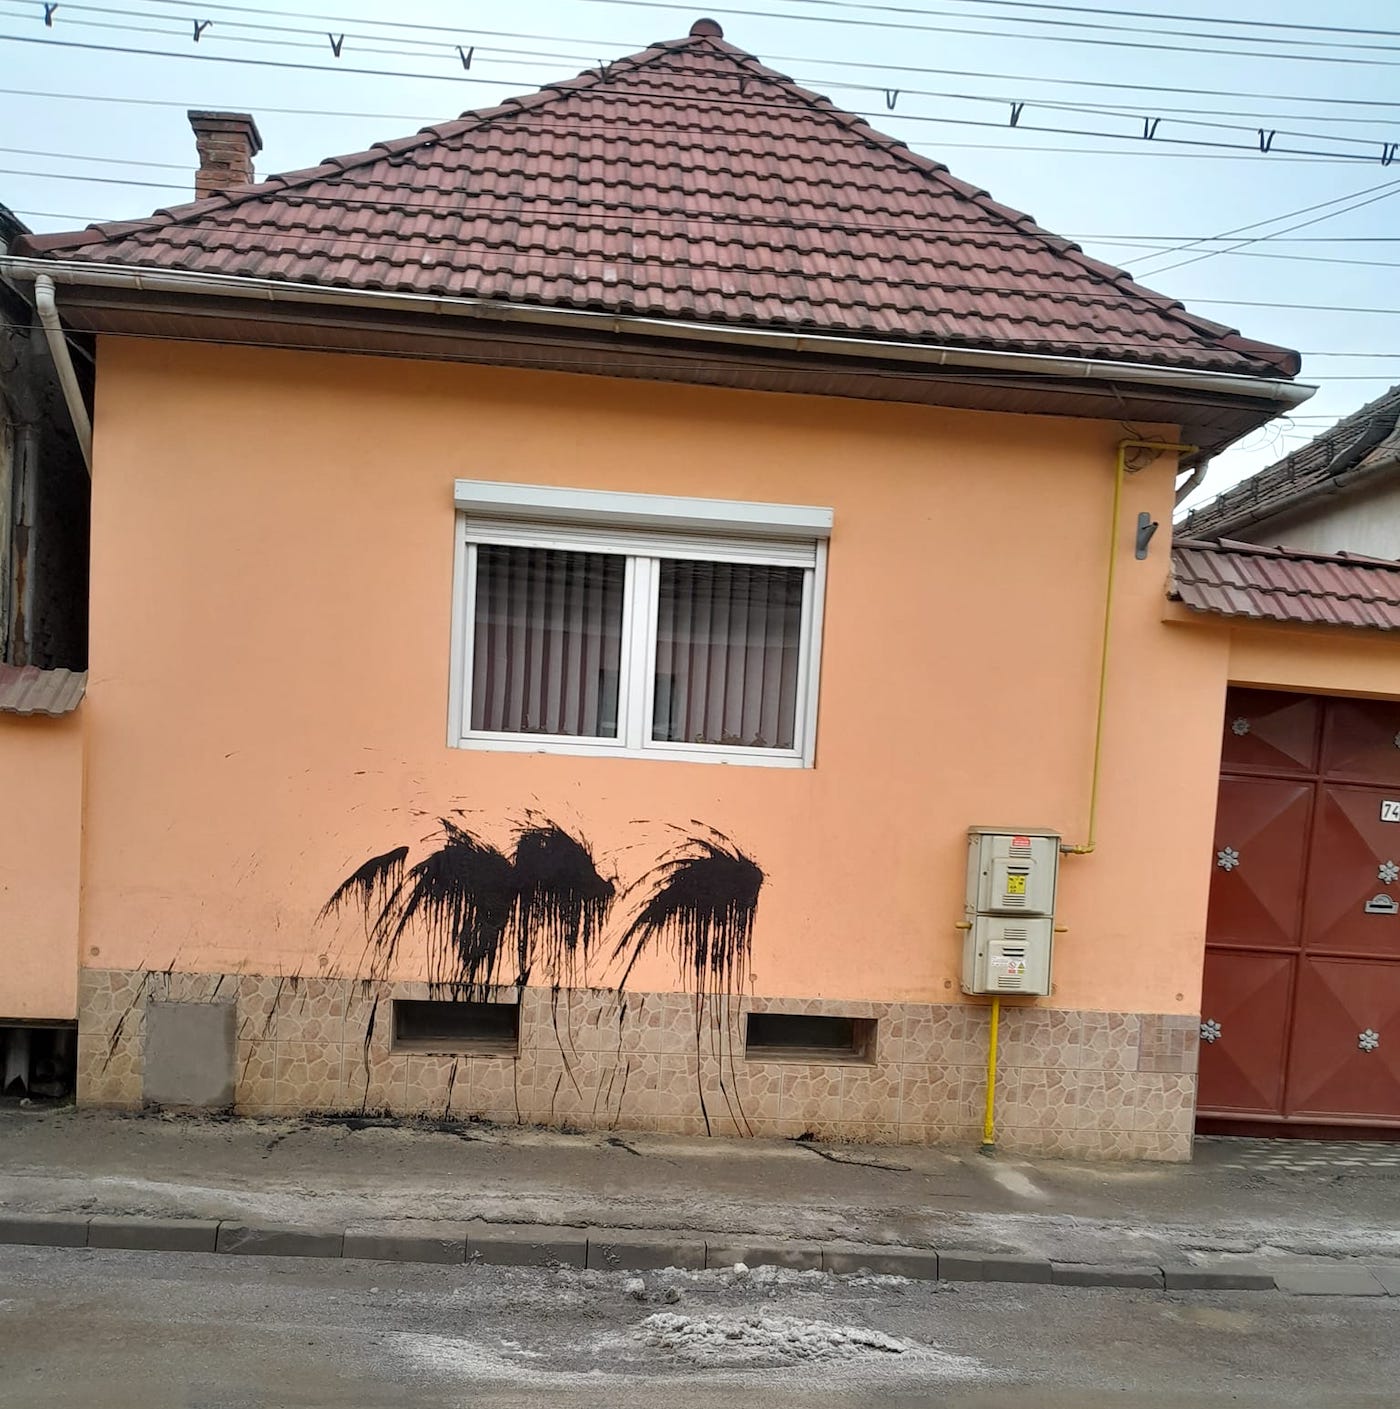 Casa unui ales din Cisnădie, vandalizată cu vopsea neagră. „Dacă mie mi se întâmplă așa ceva, atunci un om simplu ce să mai spere?”